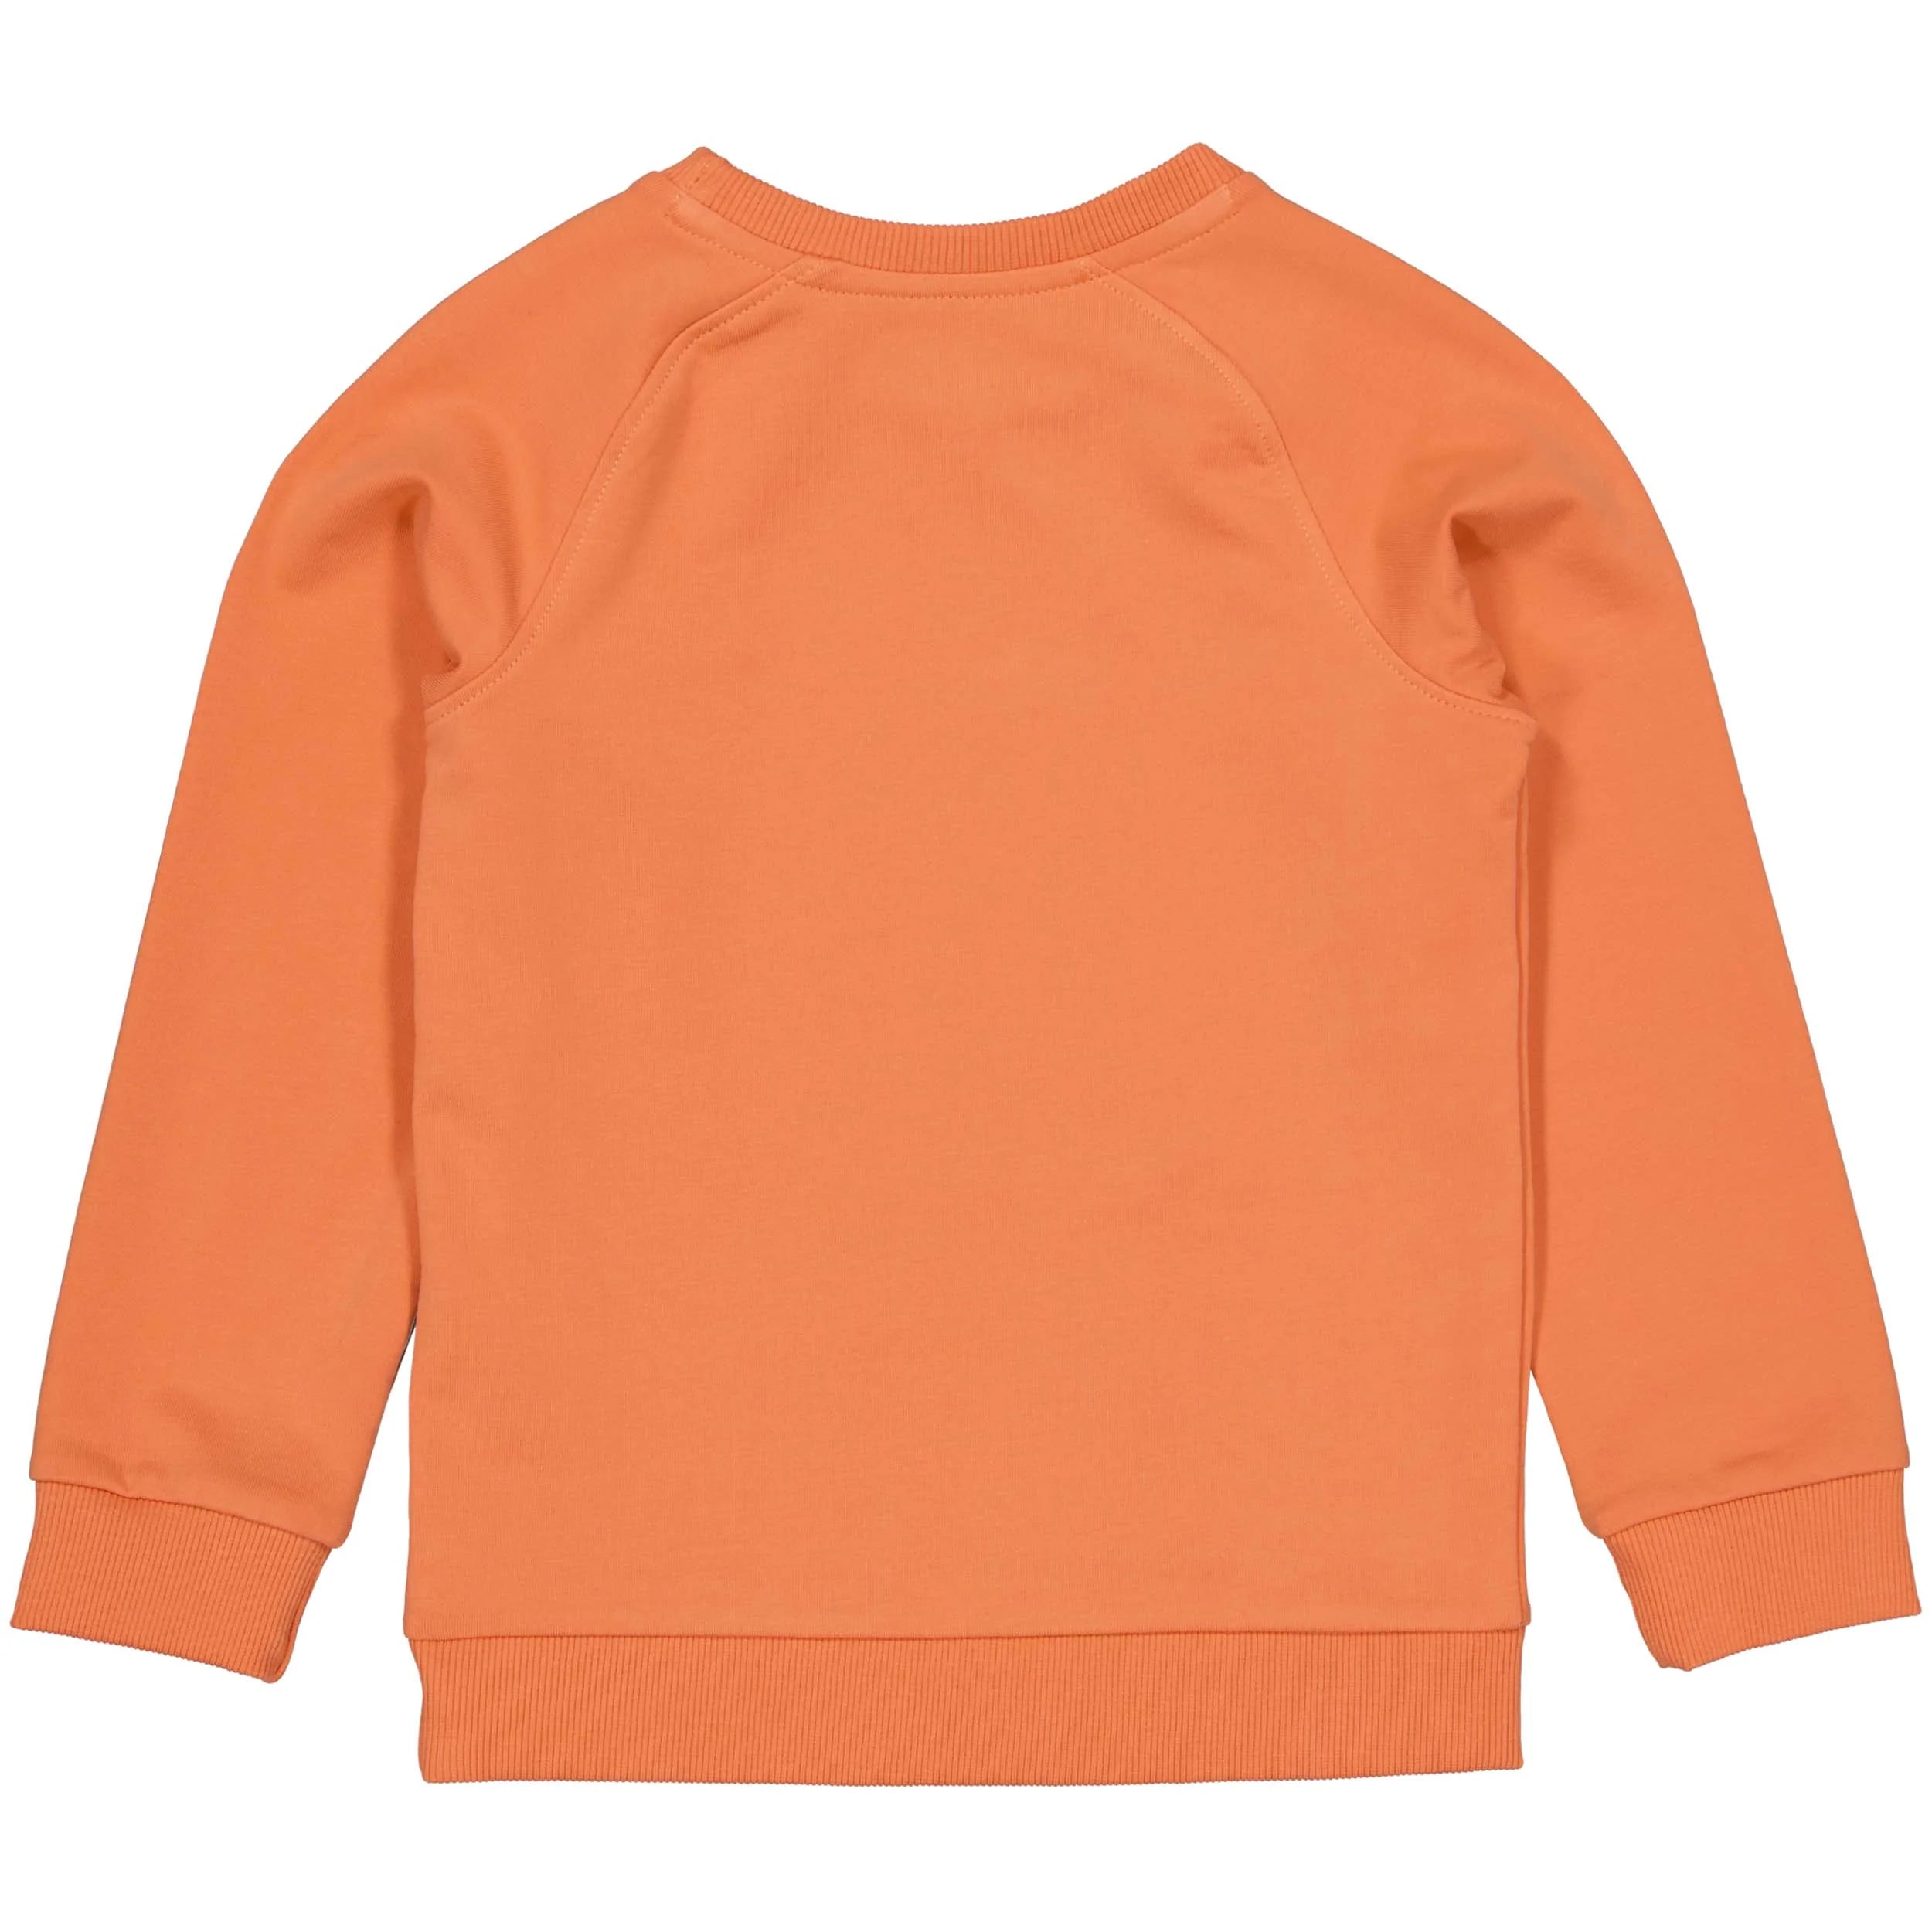 Jongens Sweater LELMAR van Levv in de kleur Orange Red in maat 128.